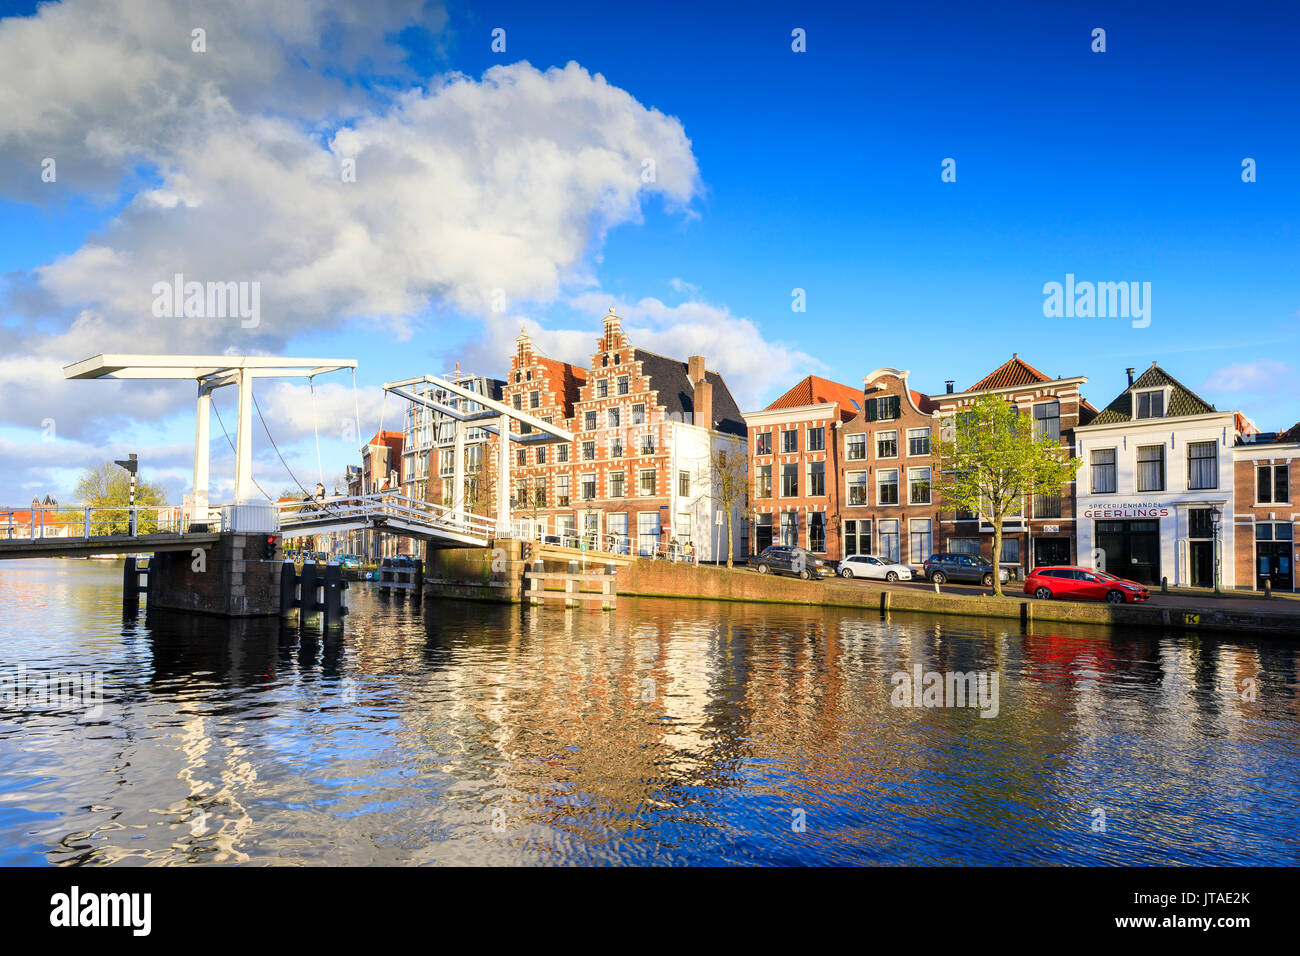 Cielo azul y las nubes en casas típicas se refleja en el canal del río Spaarne, Haarlem, Holanda Septentrional, en los Países Bajos, Europa Foto de stock